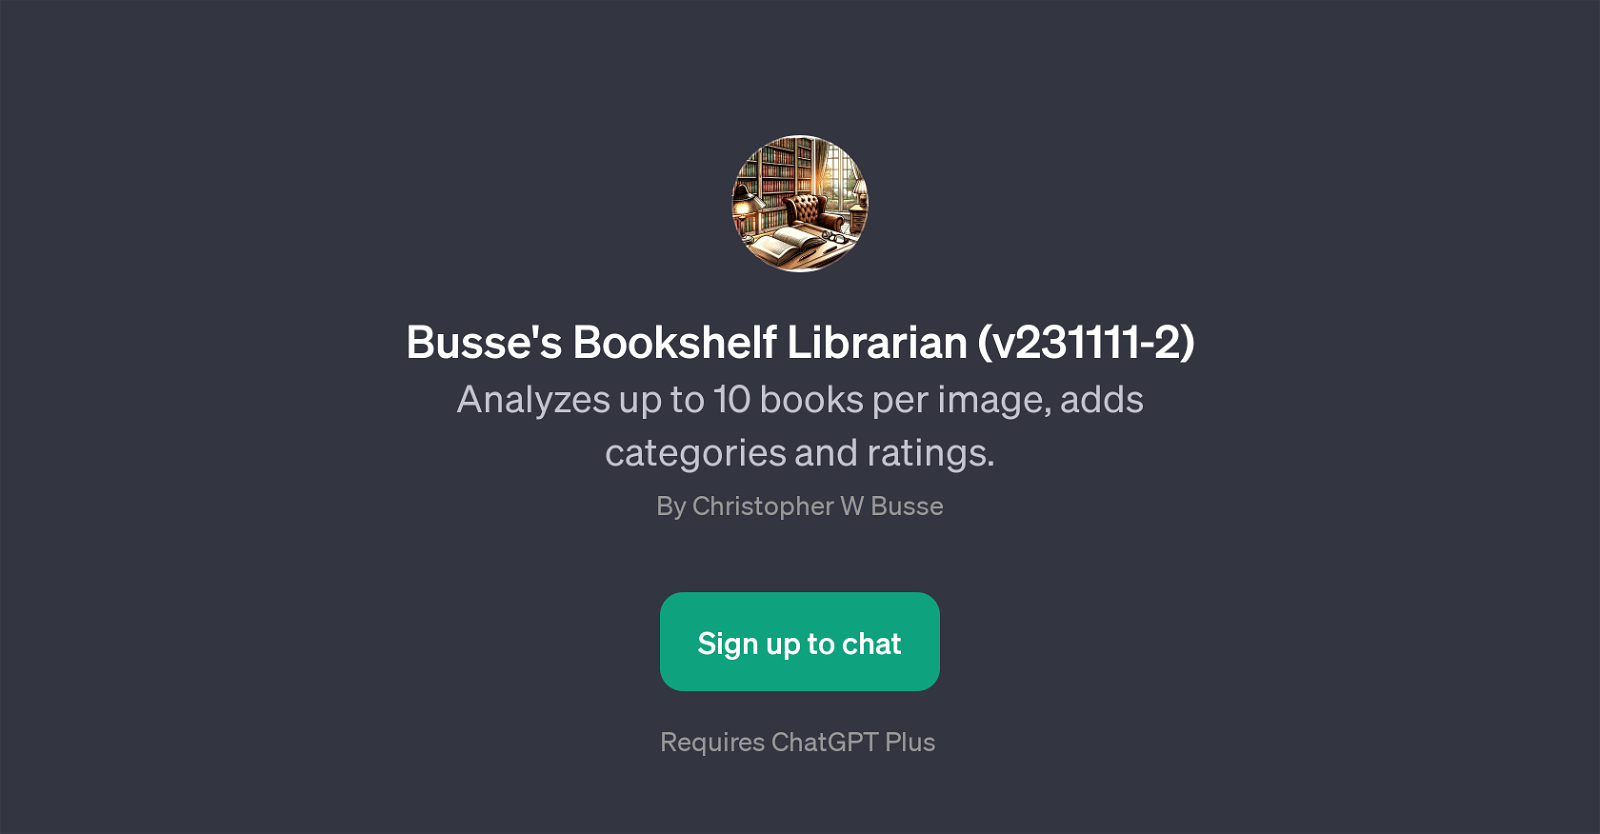 Busse's Bookshelf Librarian (v231111-2) website